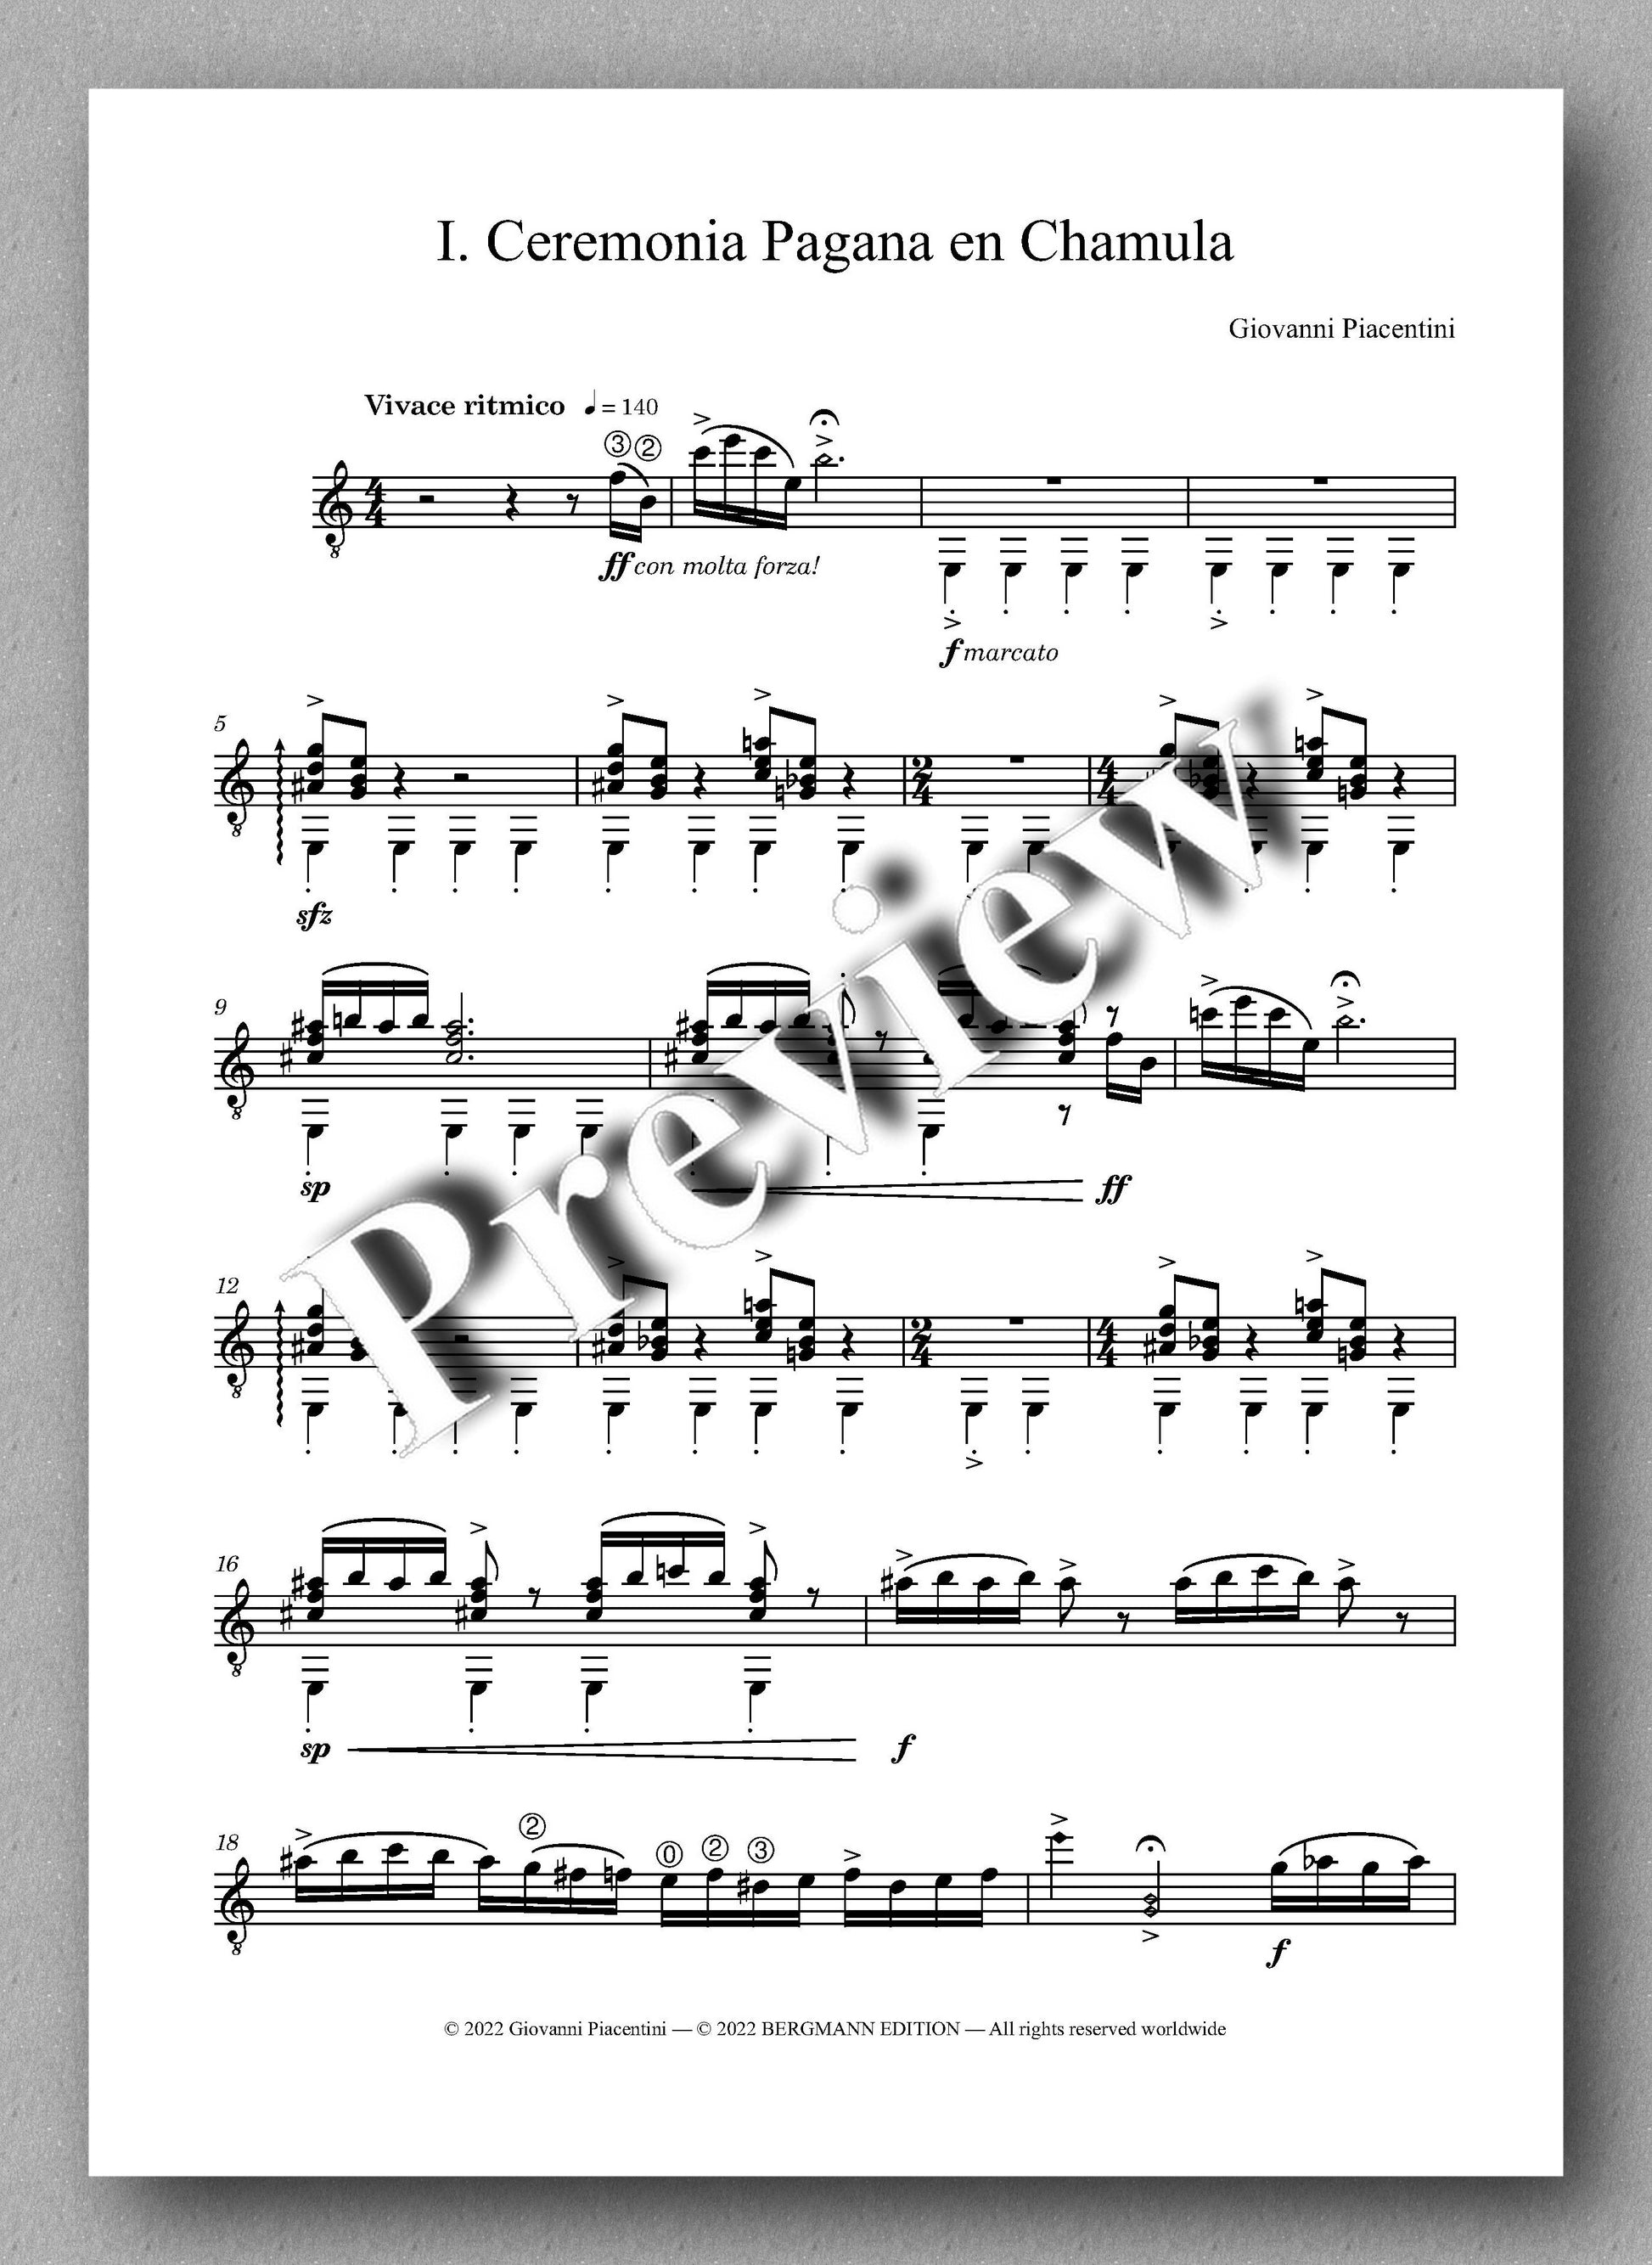 Giovanni Piacentini, Six Preludes - preview of the music score 1